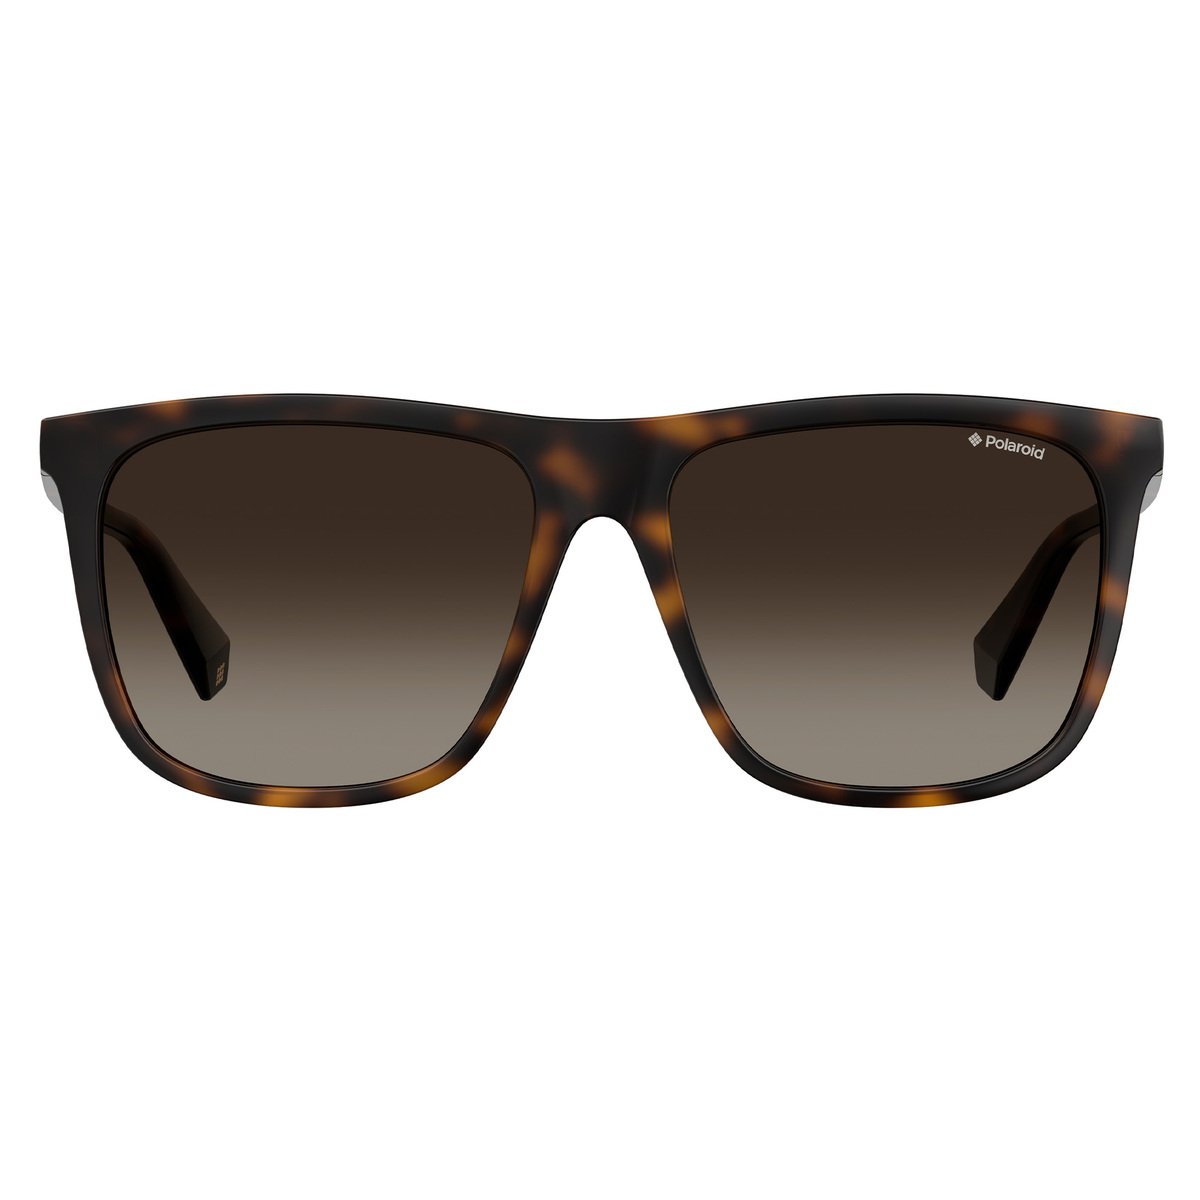 بولارويد نظارة شمسية للجنسين 6099S بتصميم مربع و لون بني